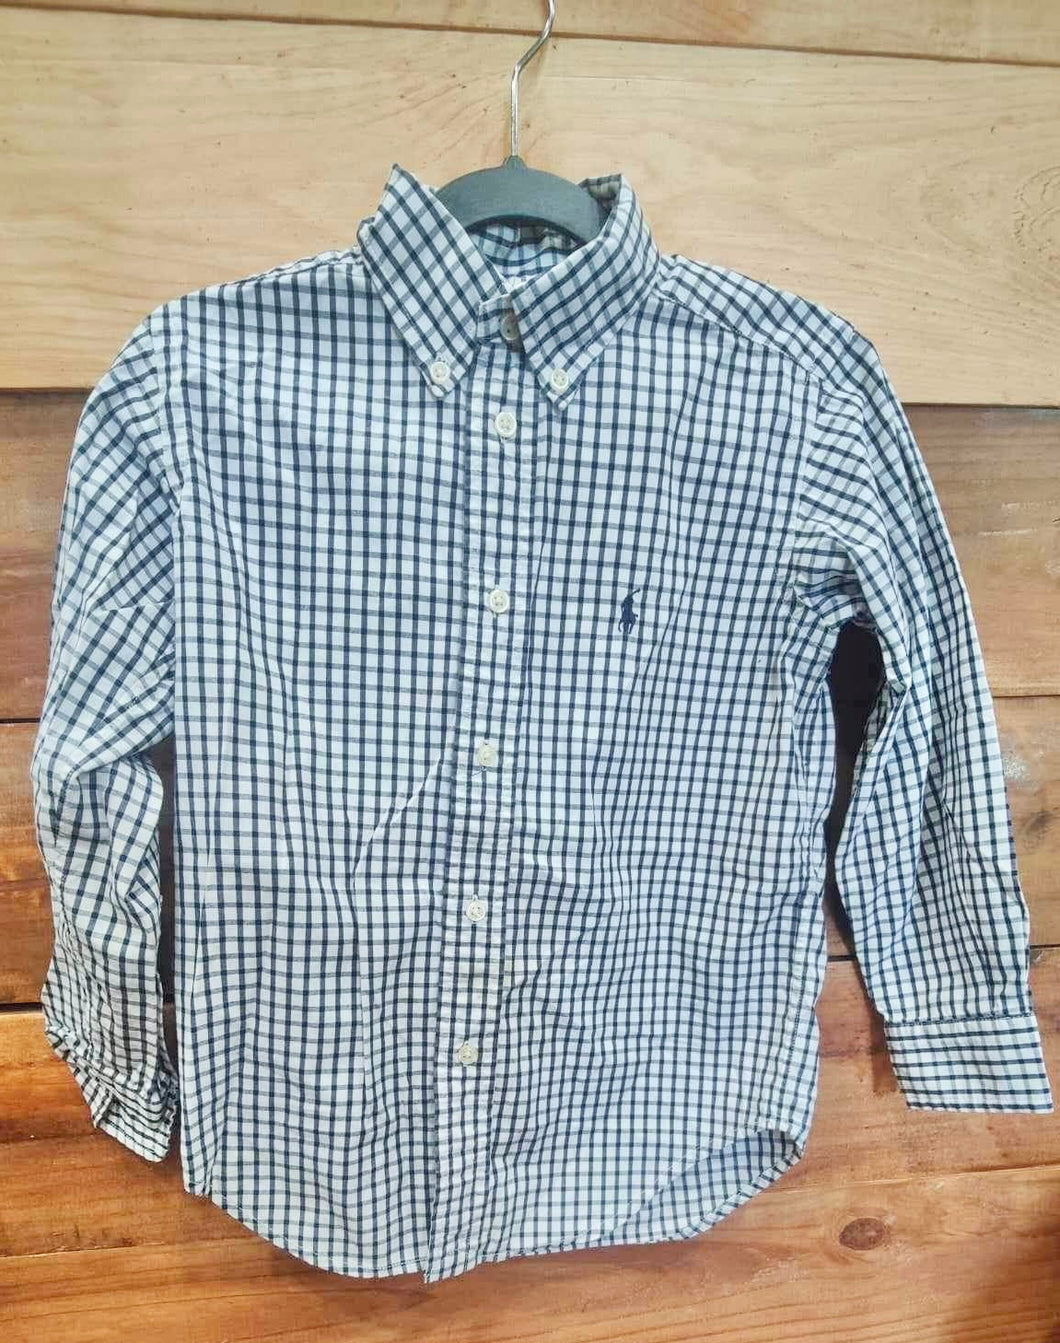 Ralph Lauren Blue Striped Shirt Size 4T